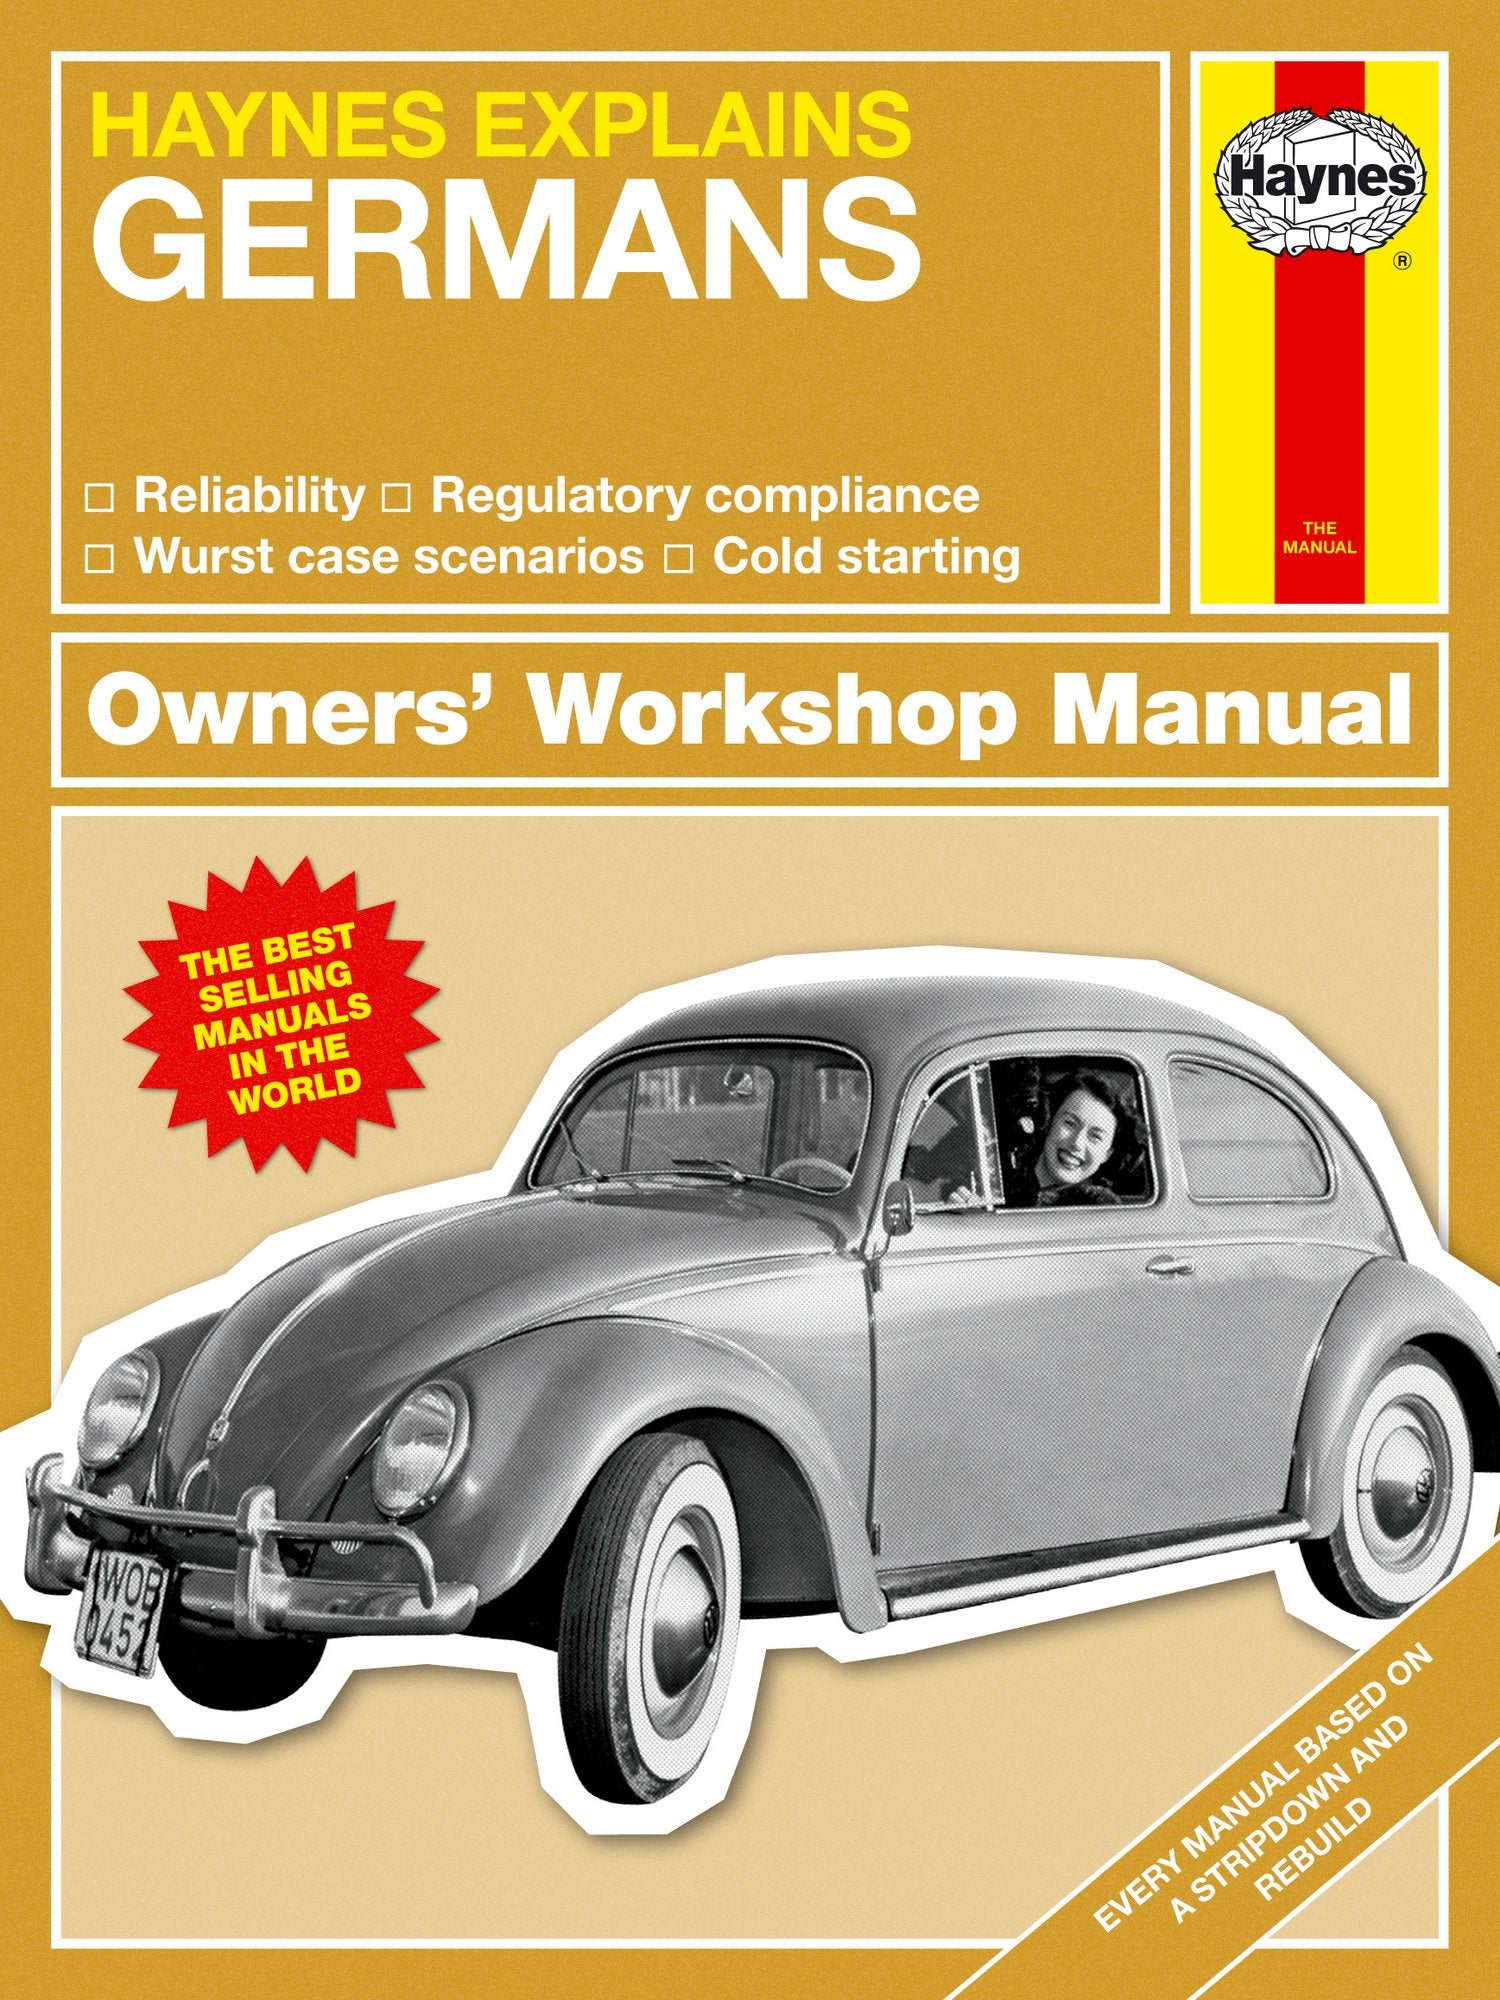 Haynes Manual - The Germans